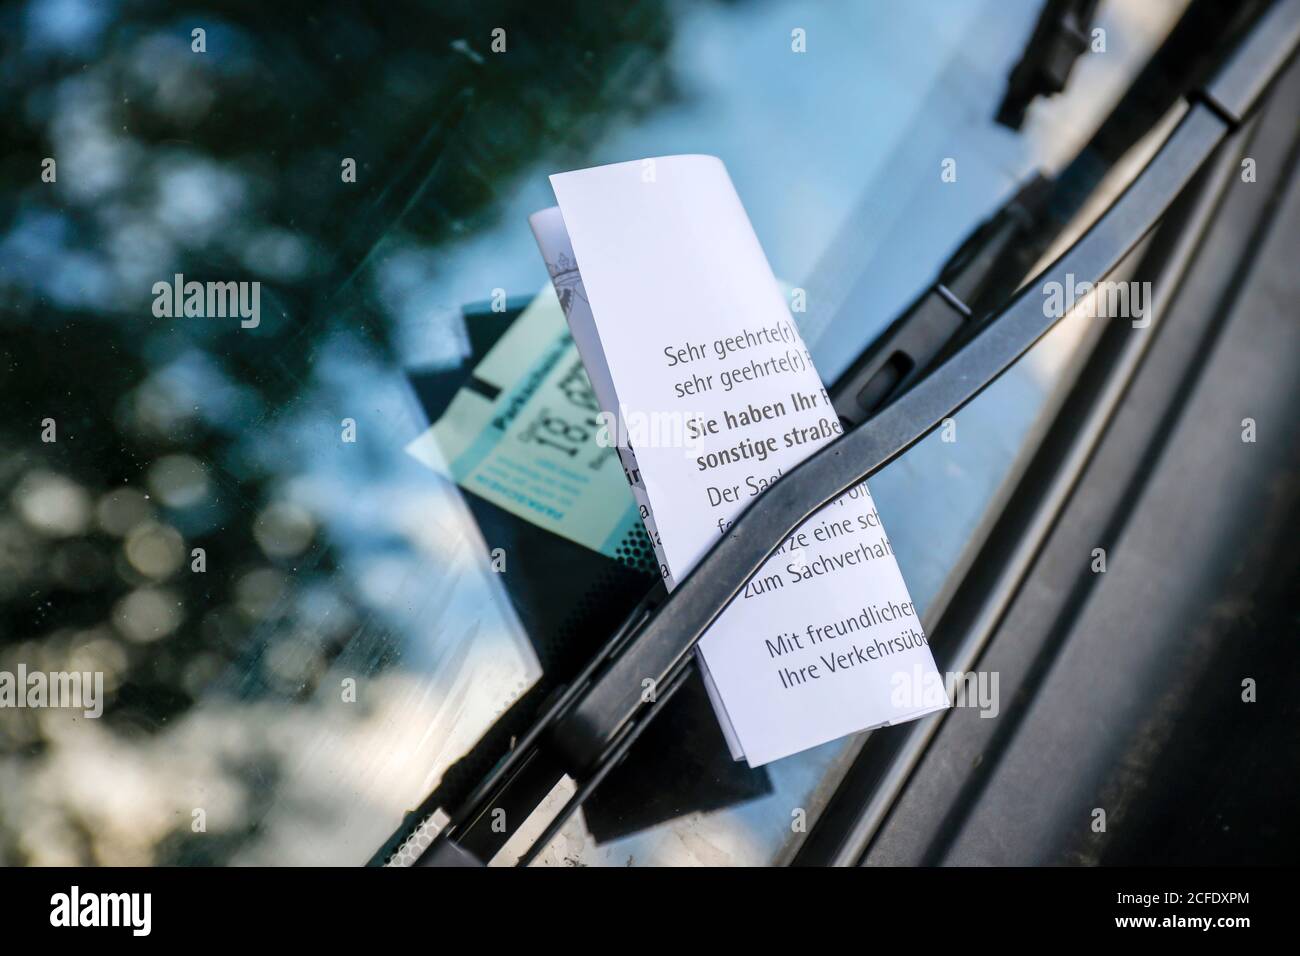 Essen, Rhénanie-du-Nord-Westphalie, Allemagne - UN billet de stationnement est bloqué sur l'essuie-glace sur le pare-brise d'une voiture dans un parking. Banque D'Images